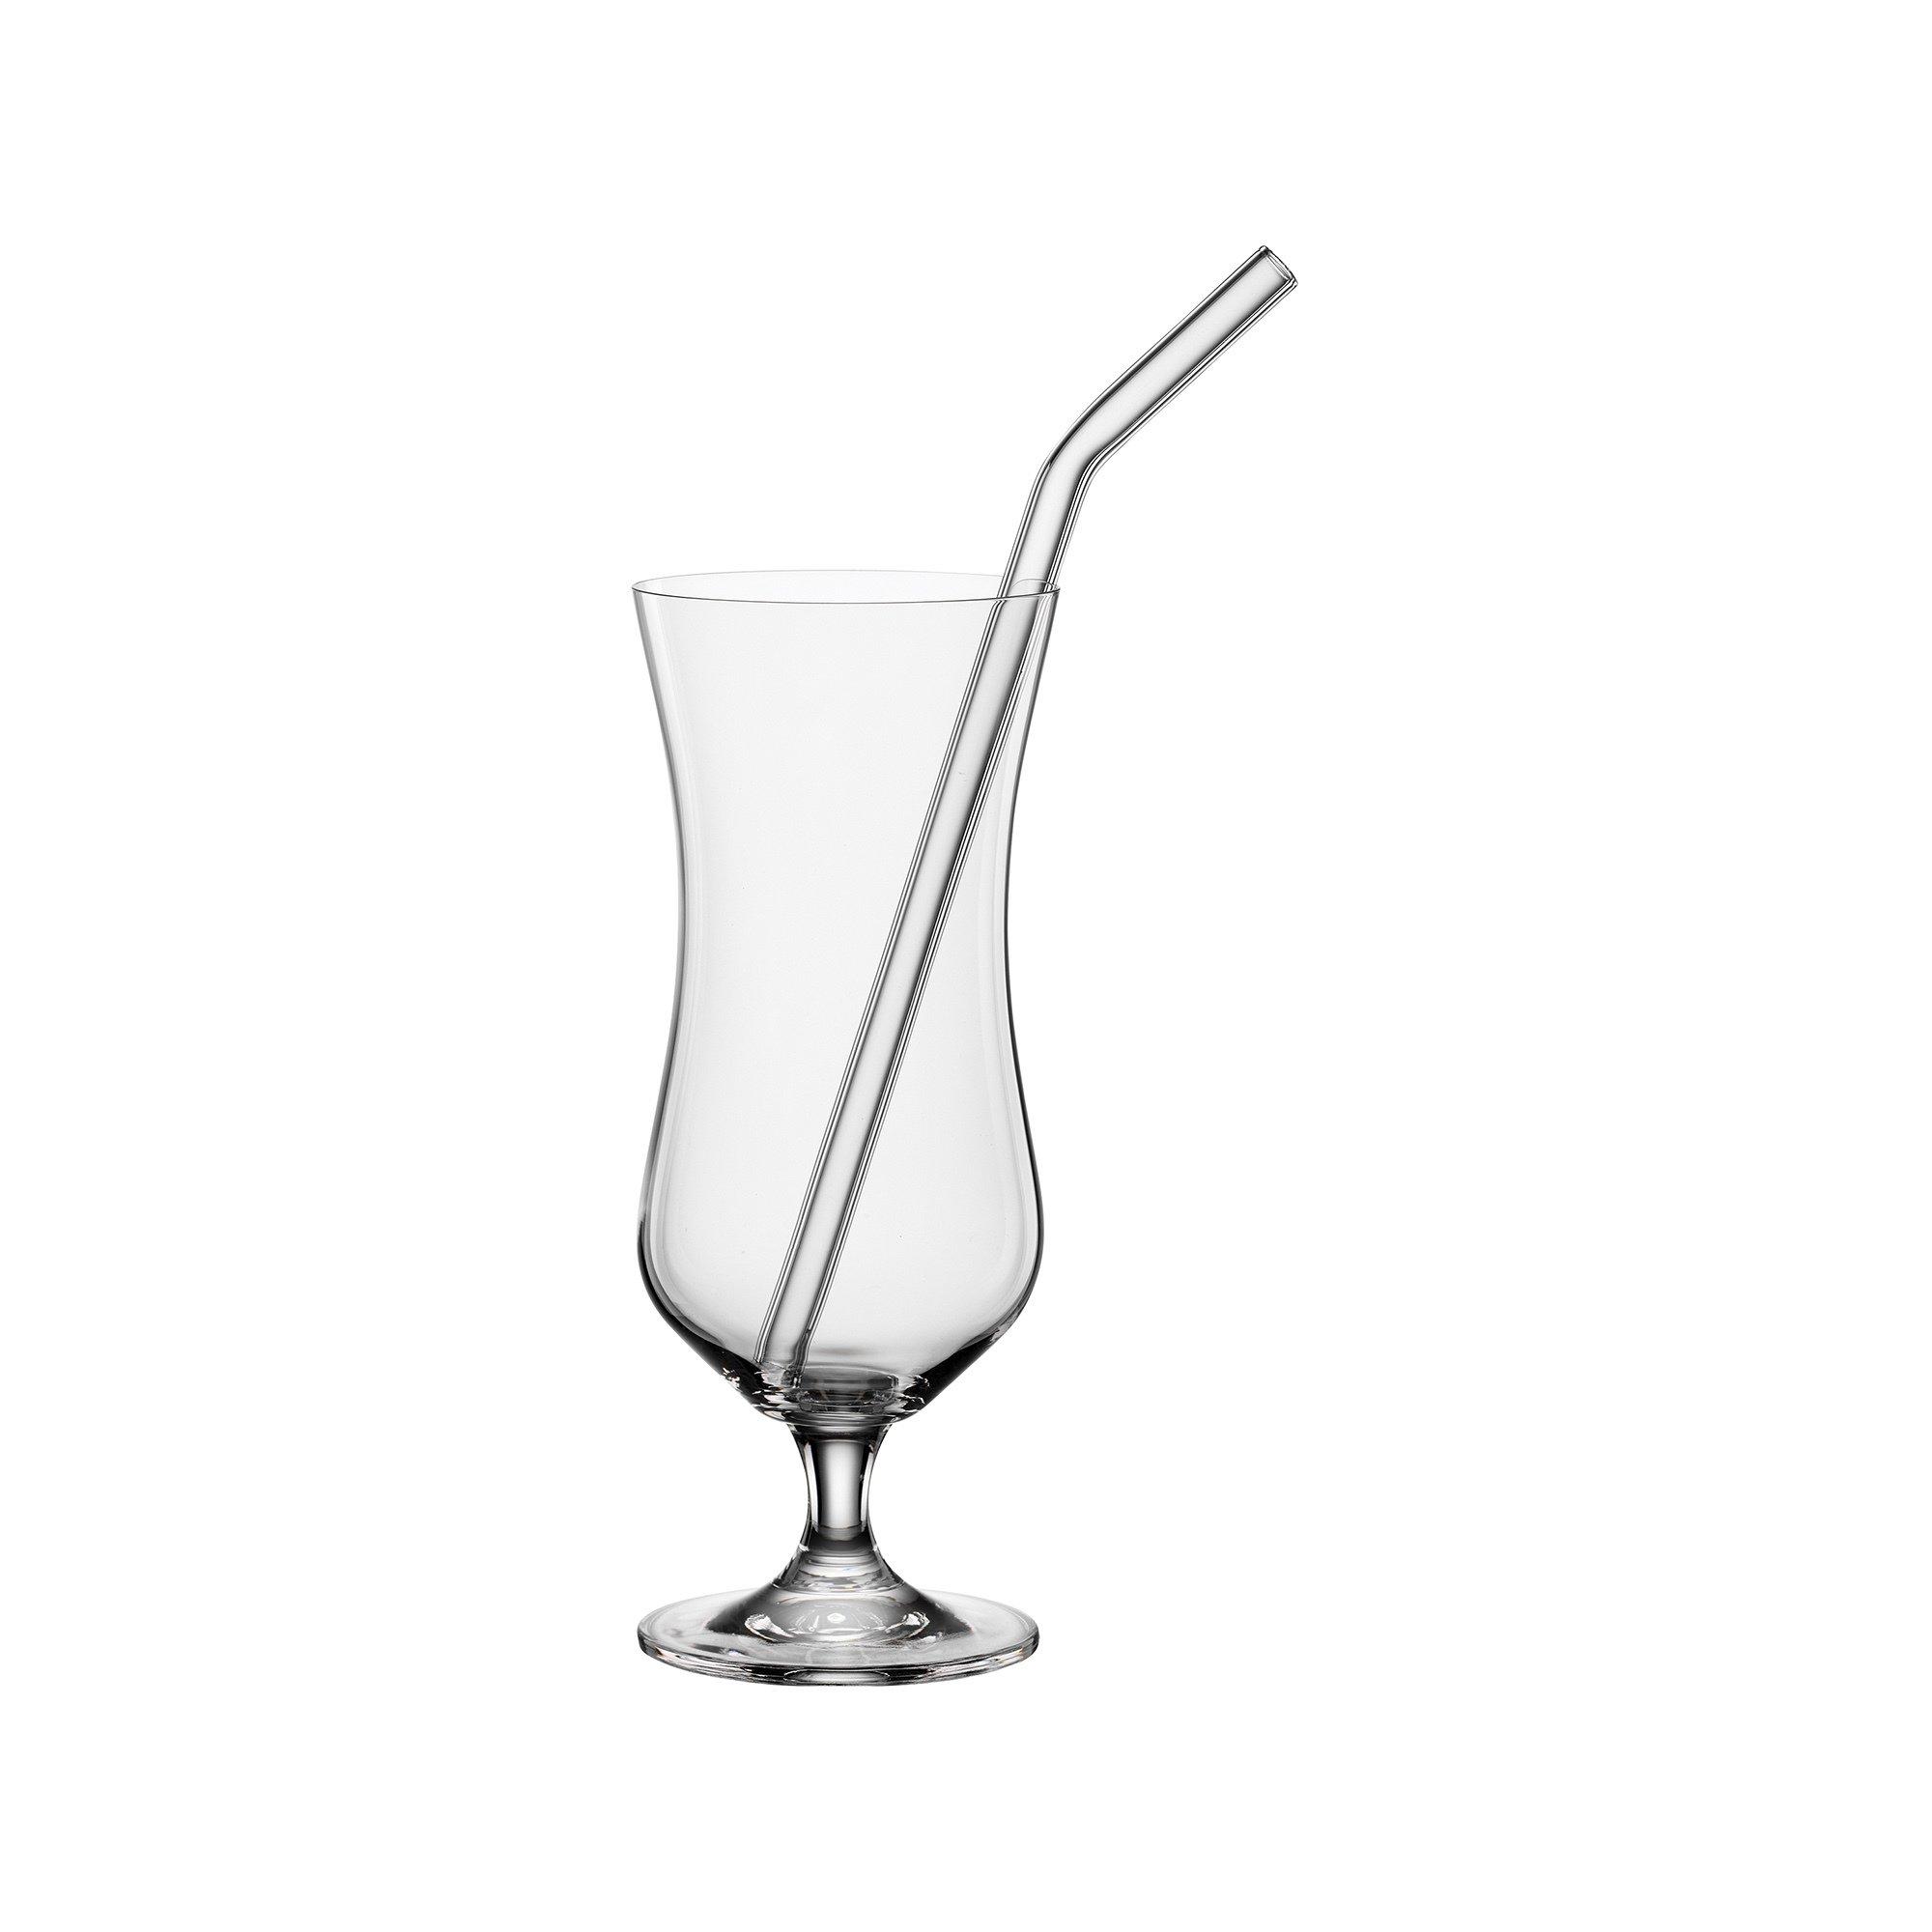 Image of BOHEMIA Cristal Cocktailglas mit Halm, 2er Set Bar Selection - 420ml